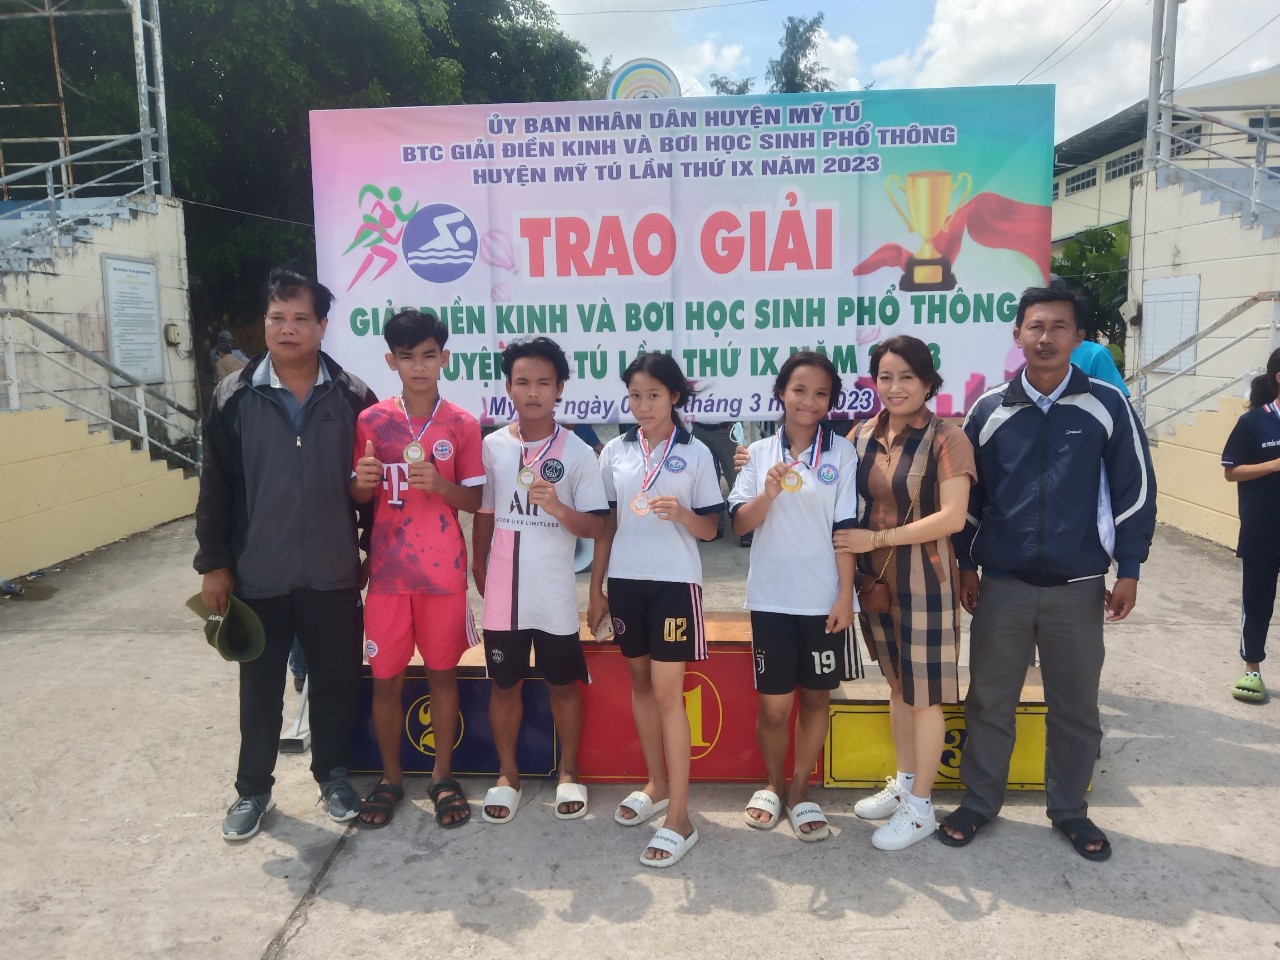 Học sinh trường THCS Thuận Hưng đạt thành tích cao tại giải Điền kinh và bơi lội học sinh phổ thông huyện Mỹ Tú lần thứ IX năm 2023